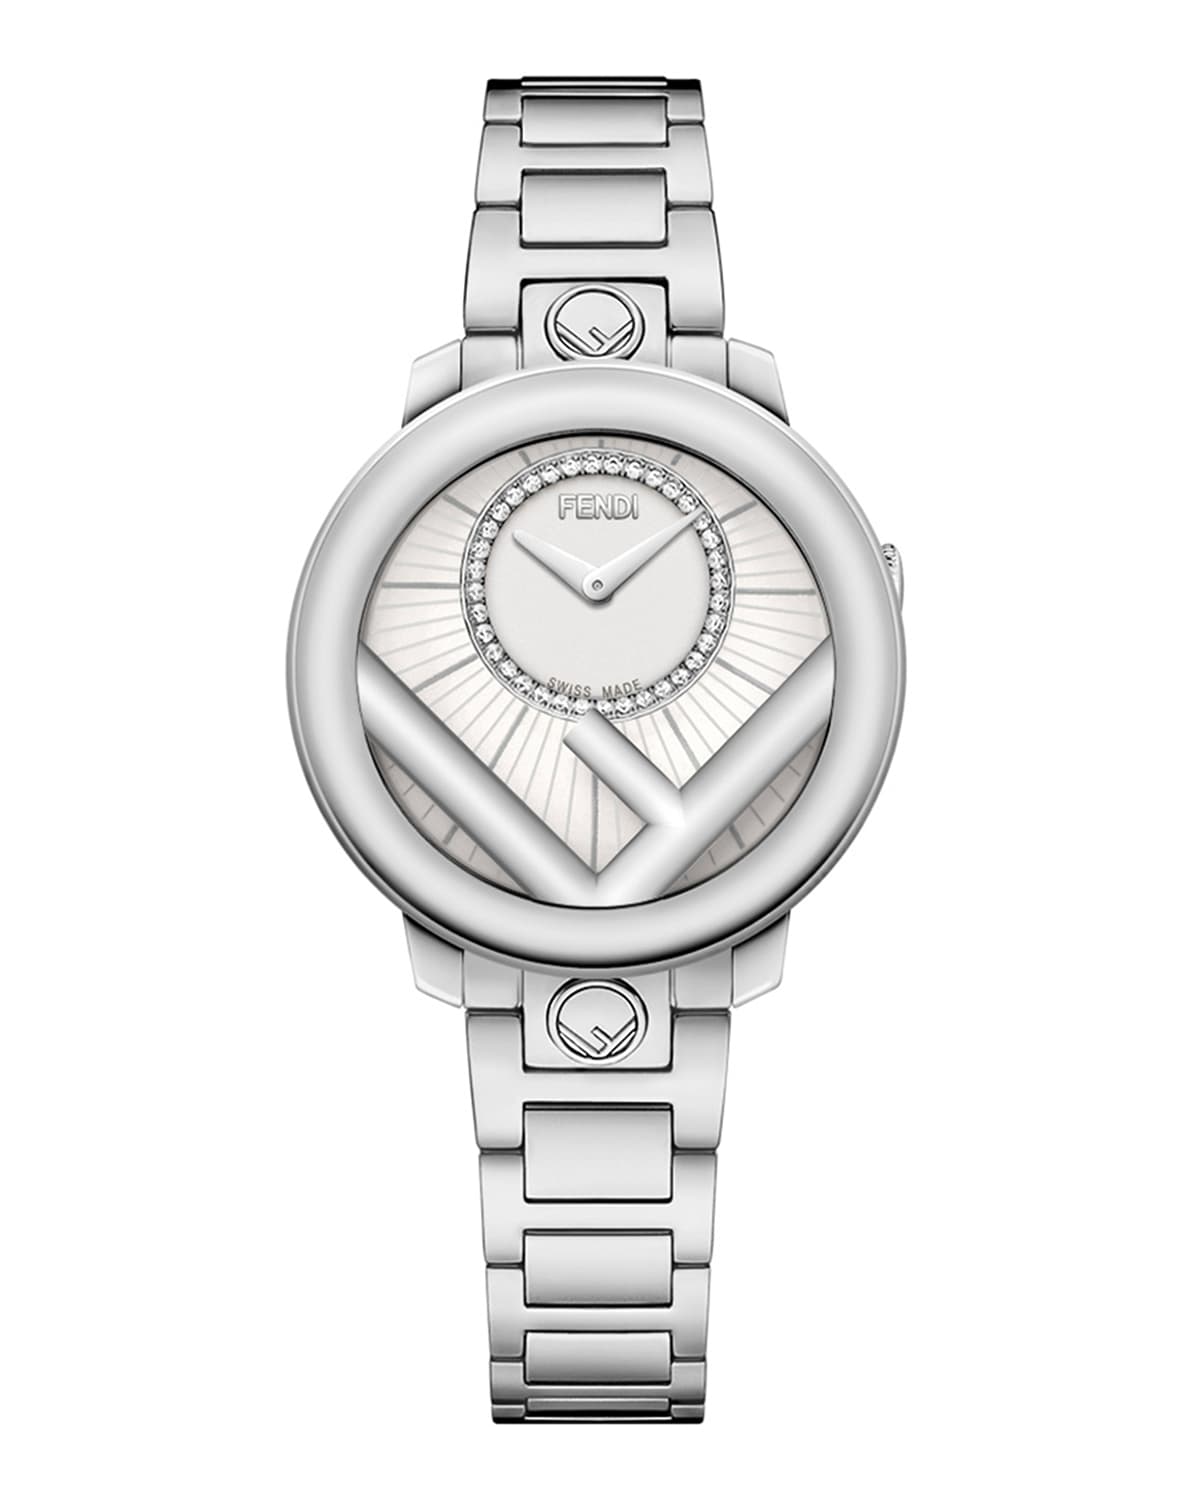 Fendi Men's 28mm Stainless Steel Bracelet Watch W/ Diamonds